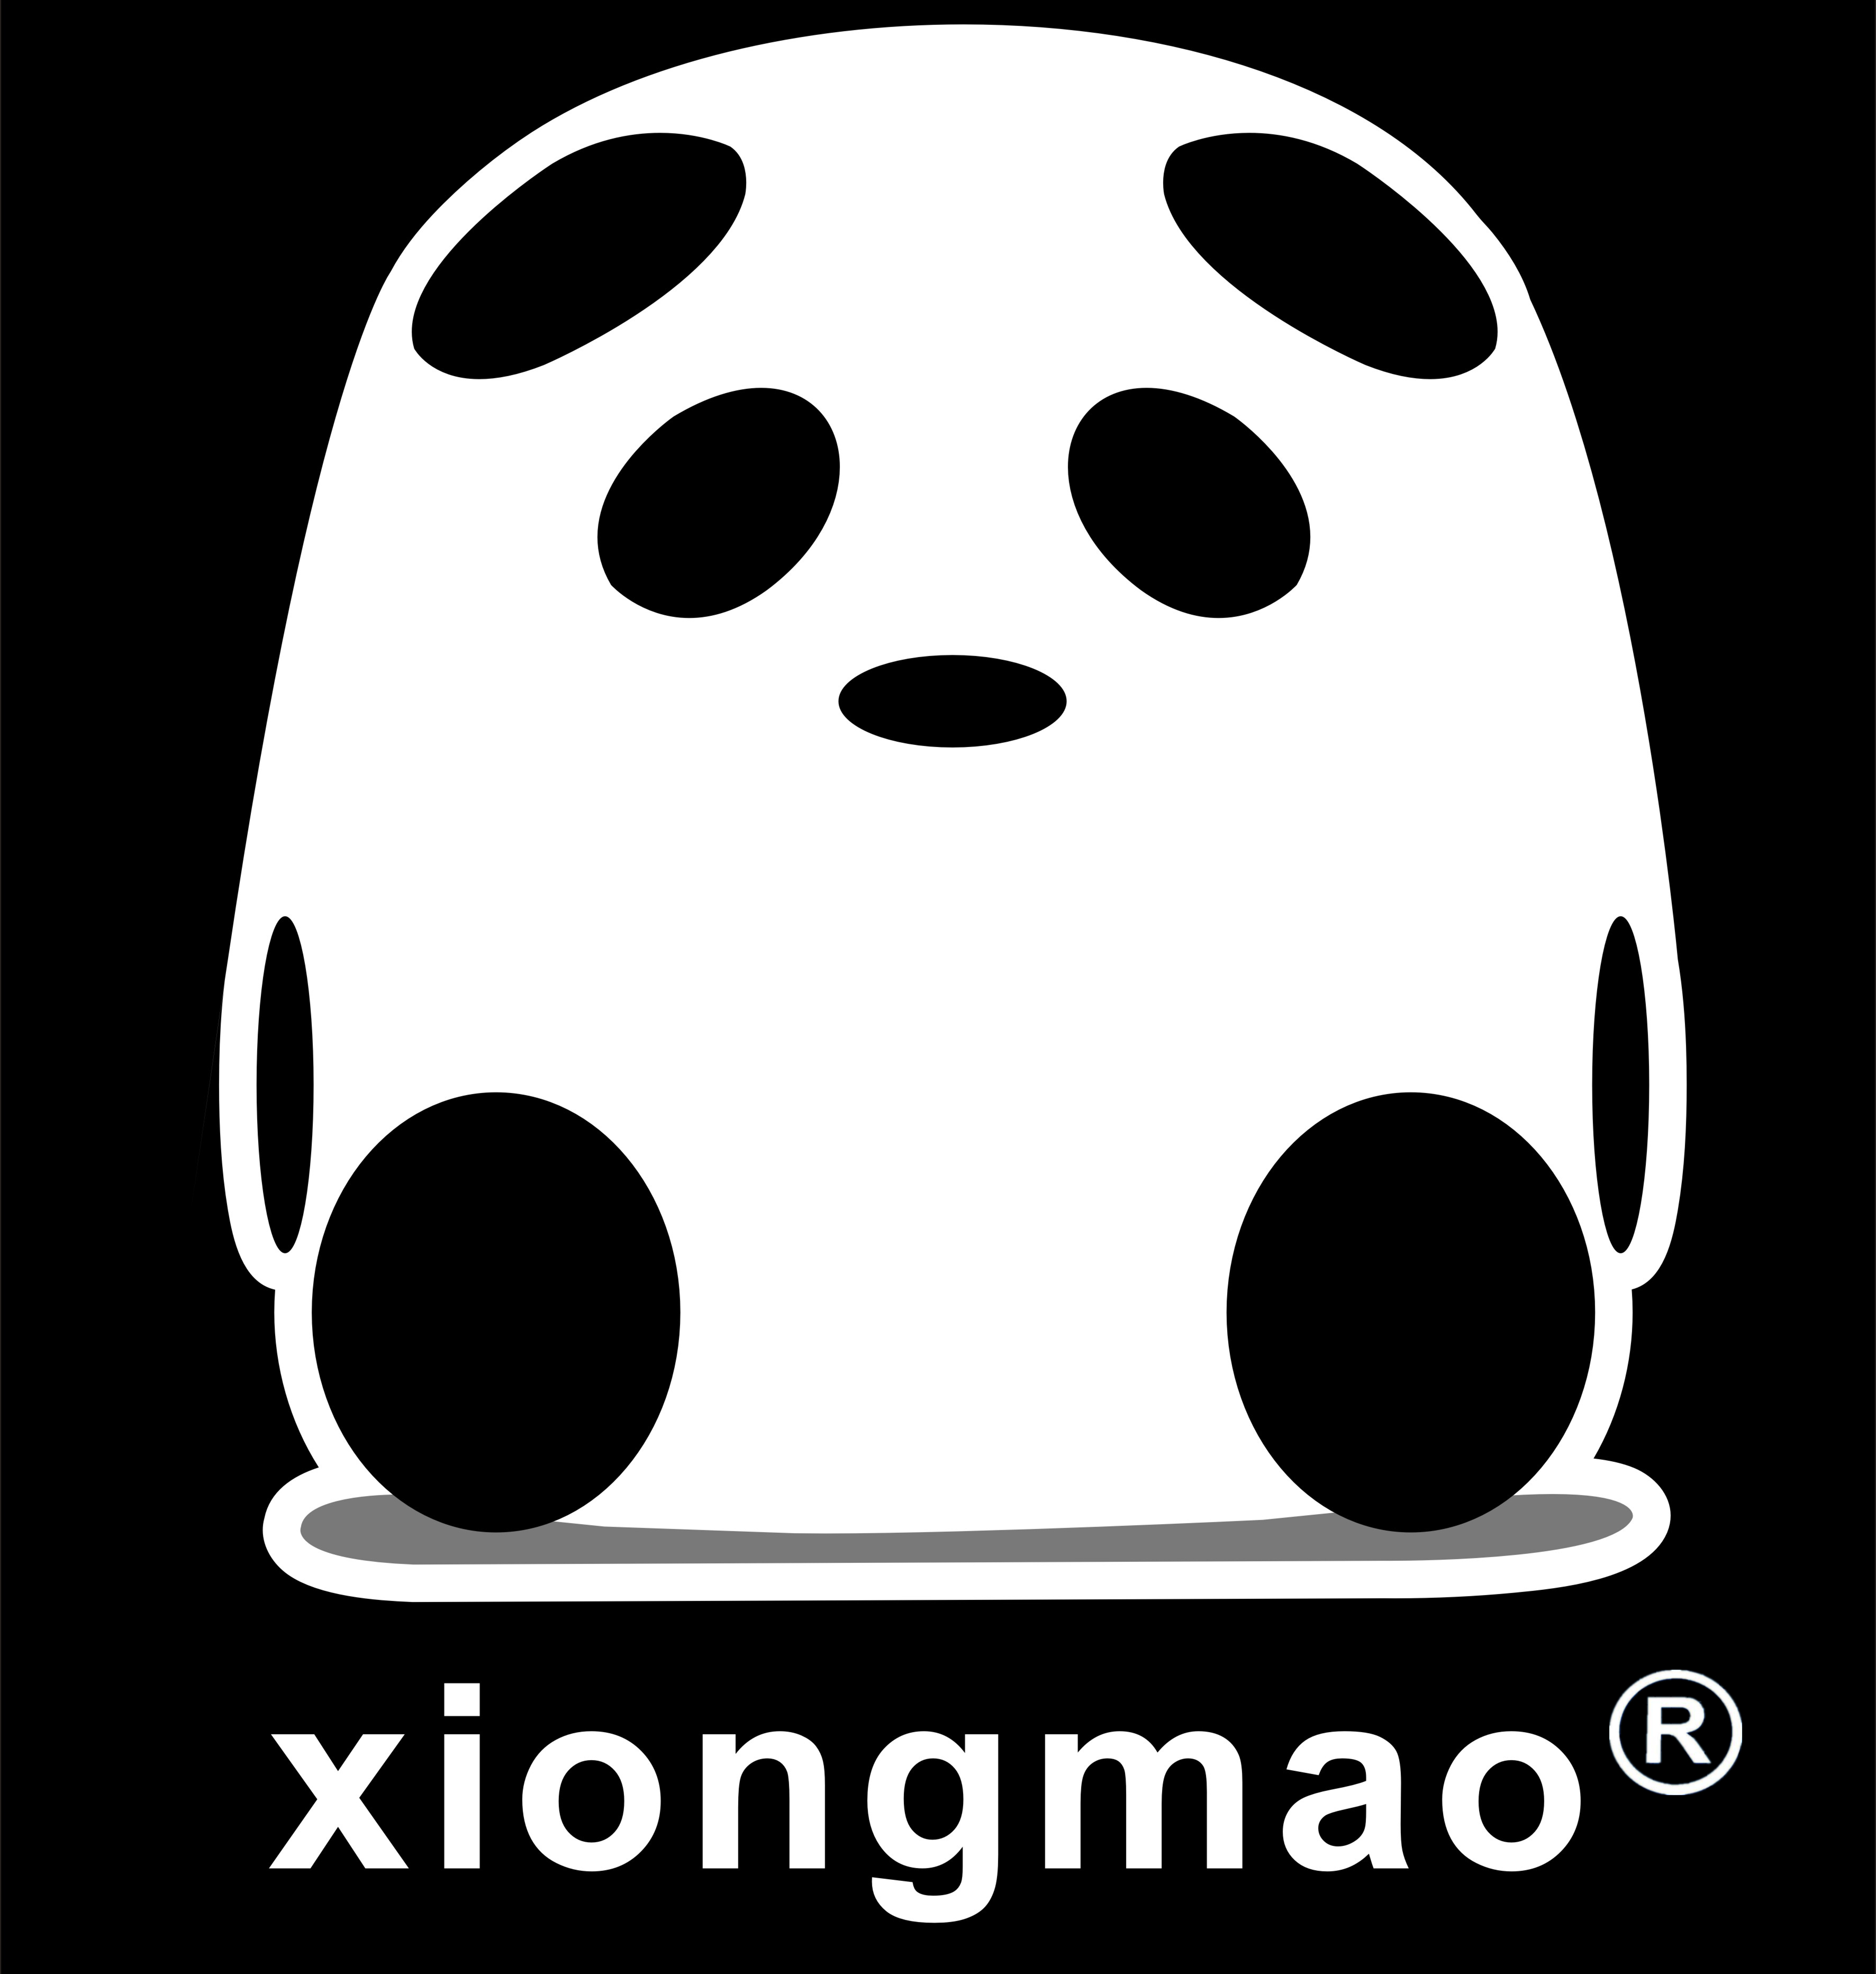 xiongmao®儿童乐园熊猫派®亲子馆